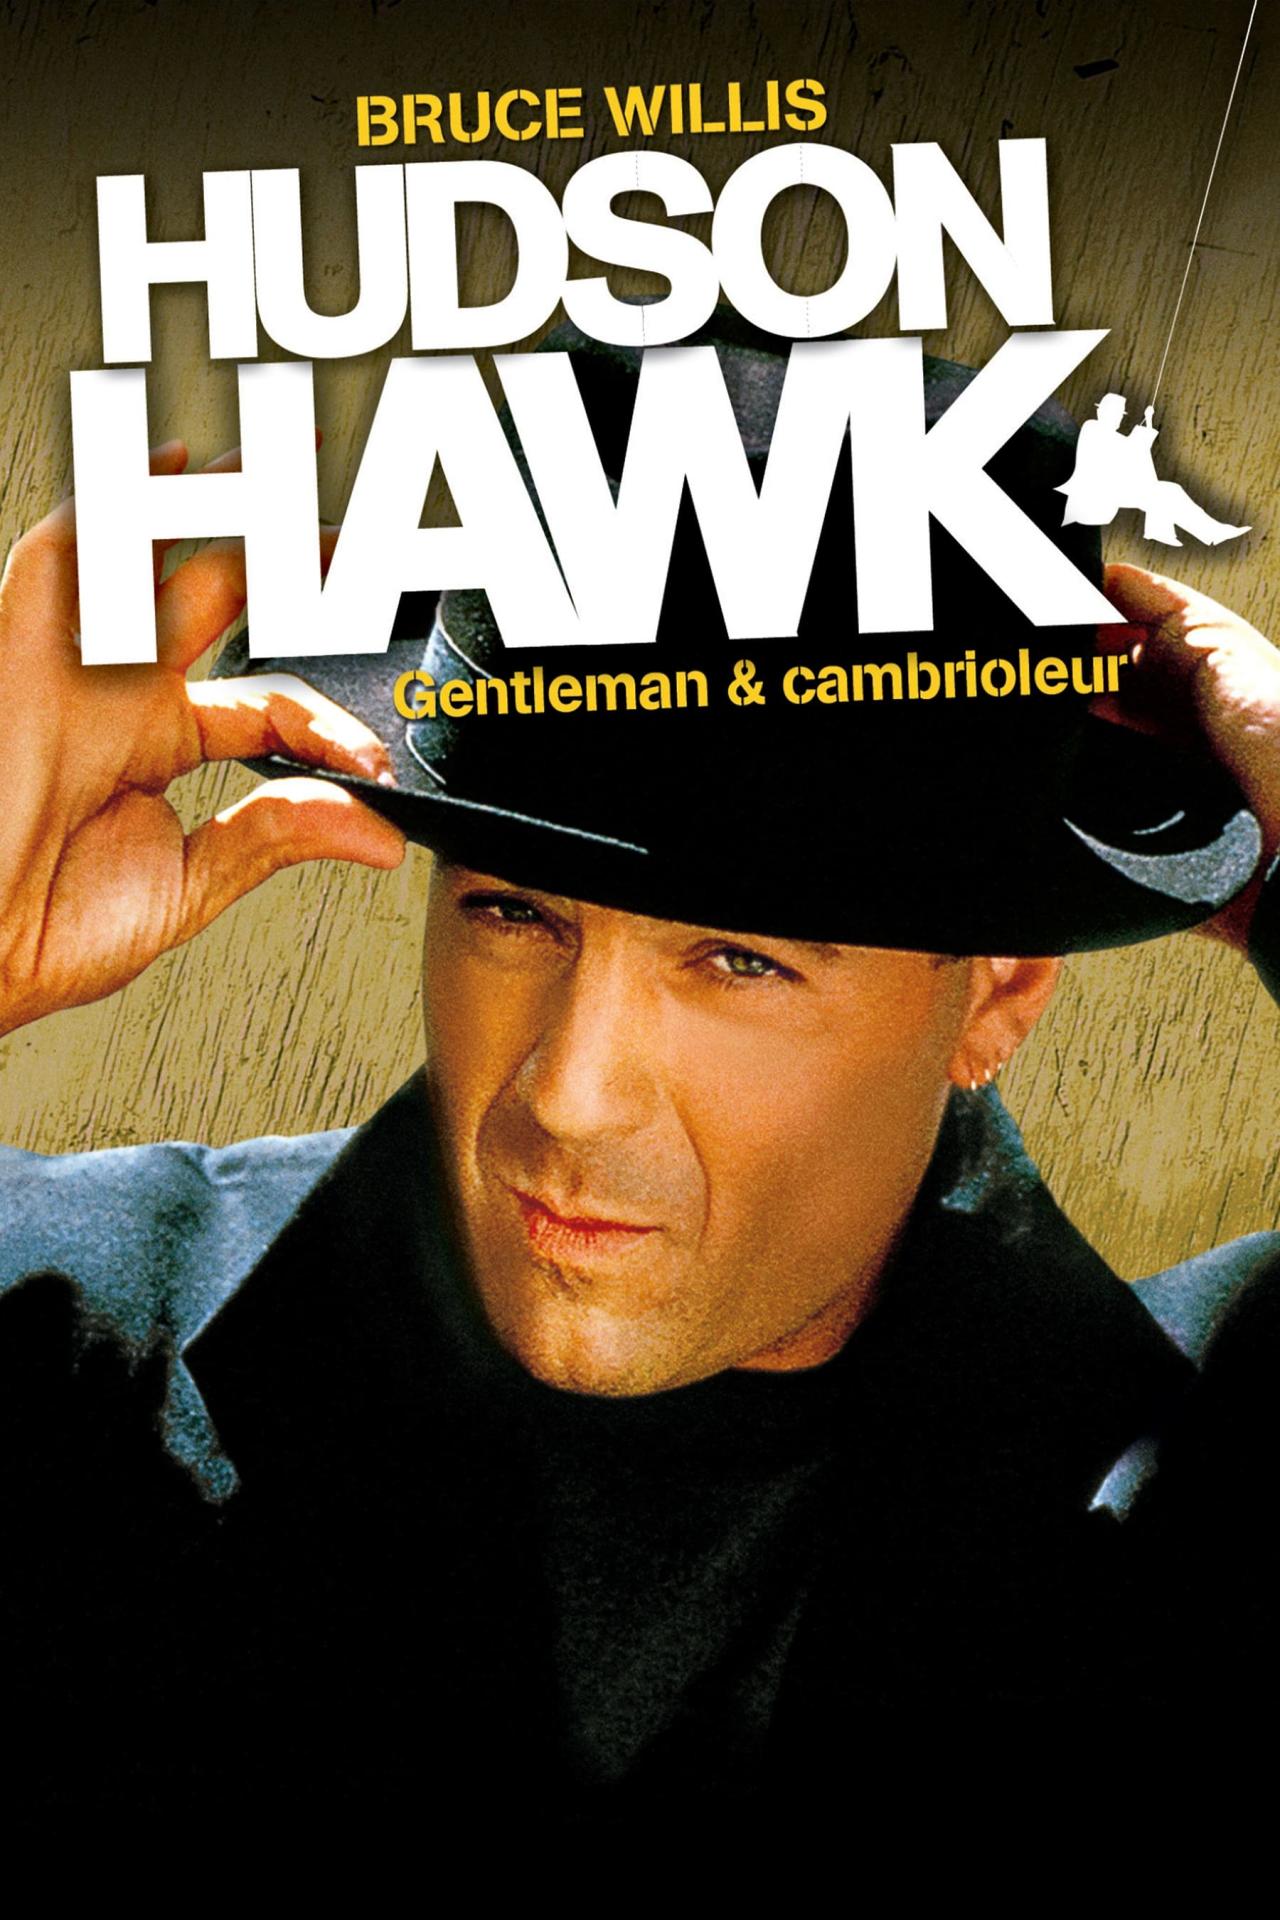 Hudson Hawk, Gentleman et Cambrioleur est-il disponible sur Netflix ou autre ?